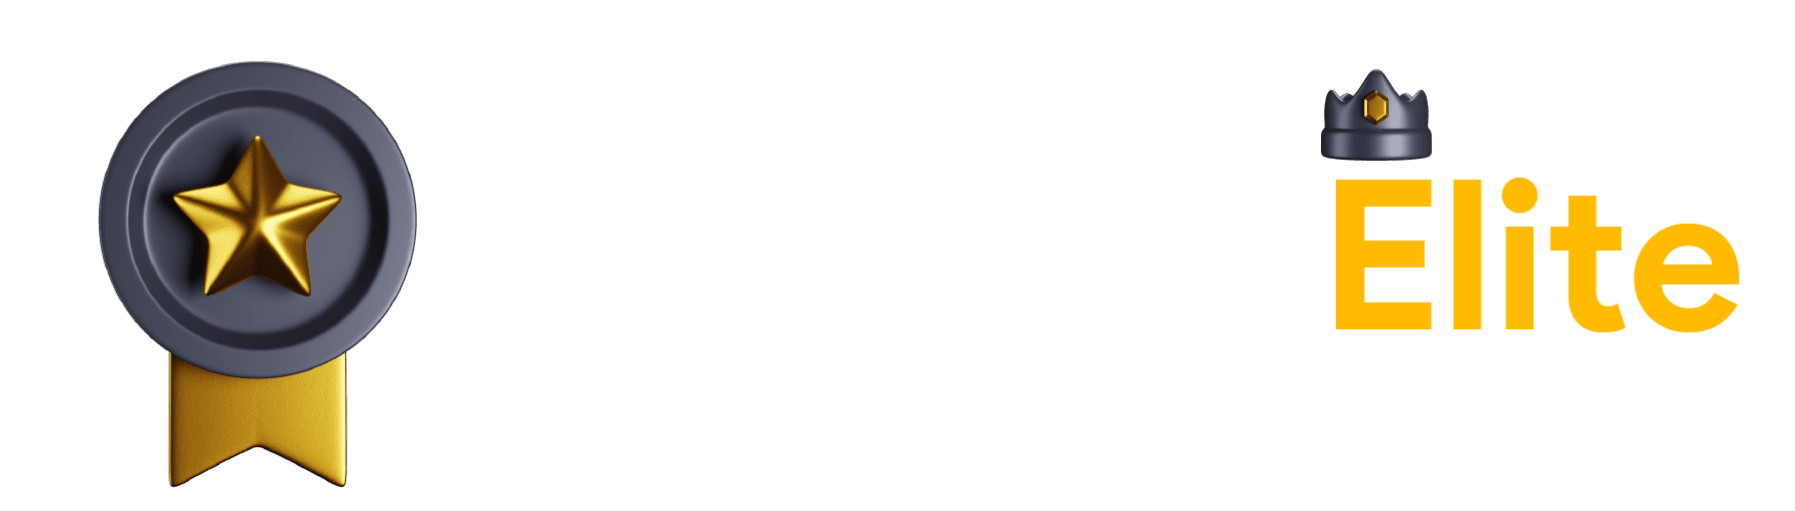 Academy-Elite-02